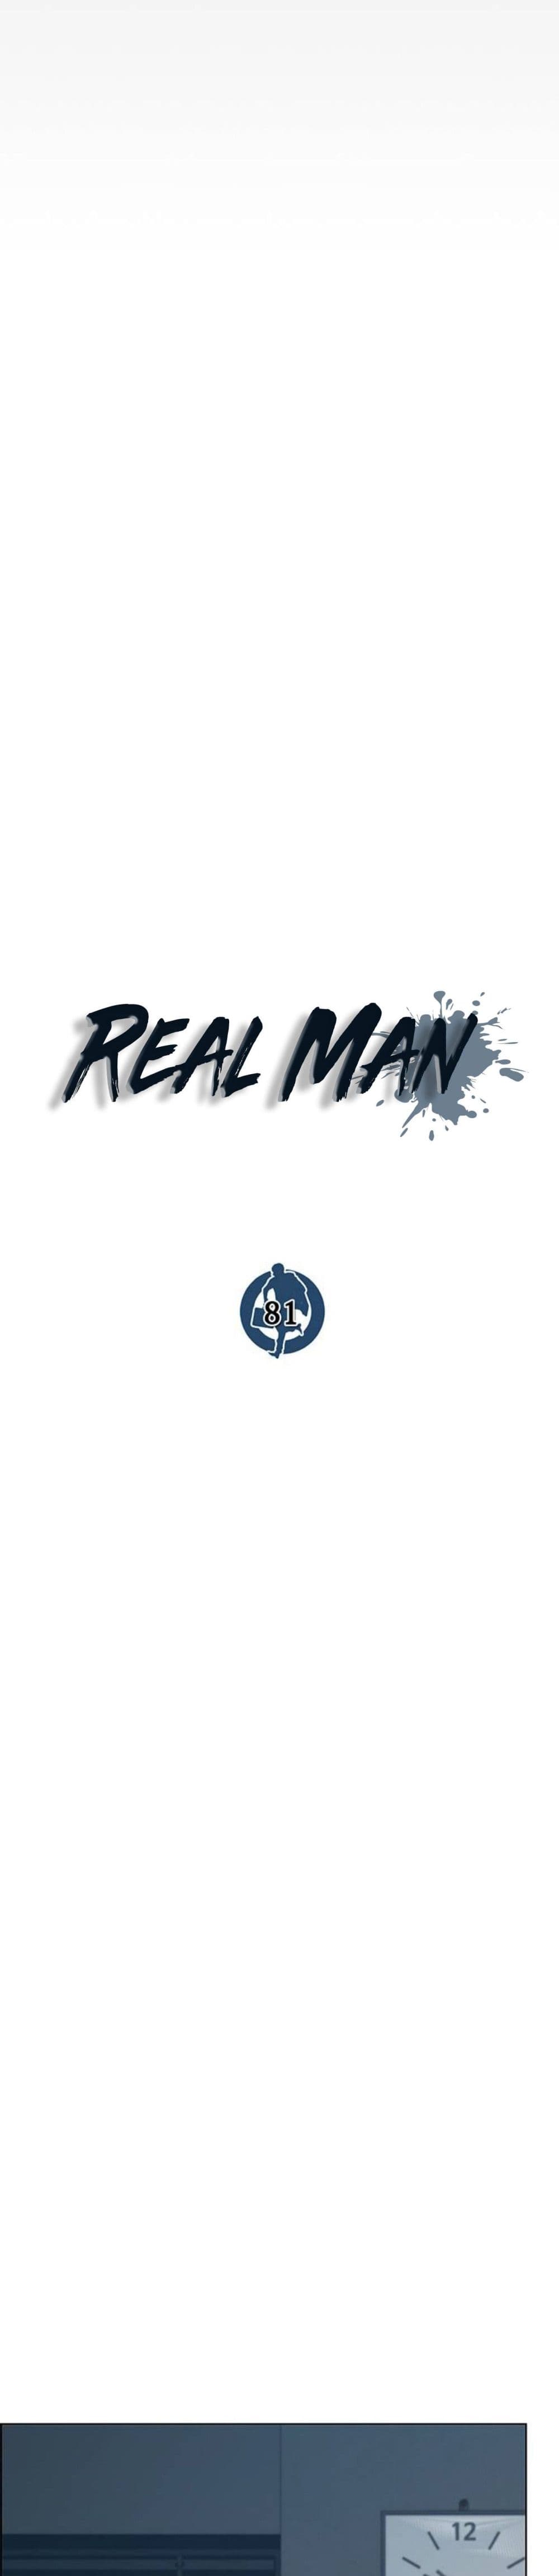 Real Man 81-81